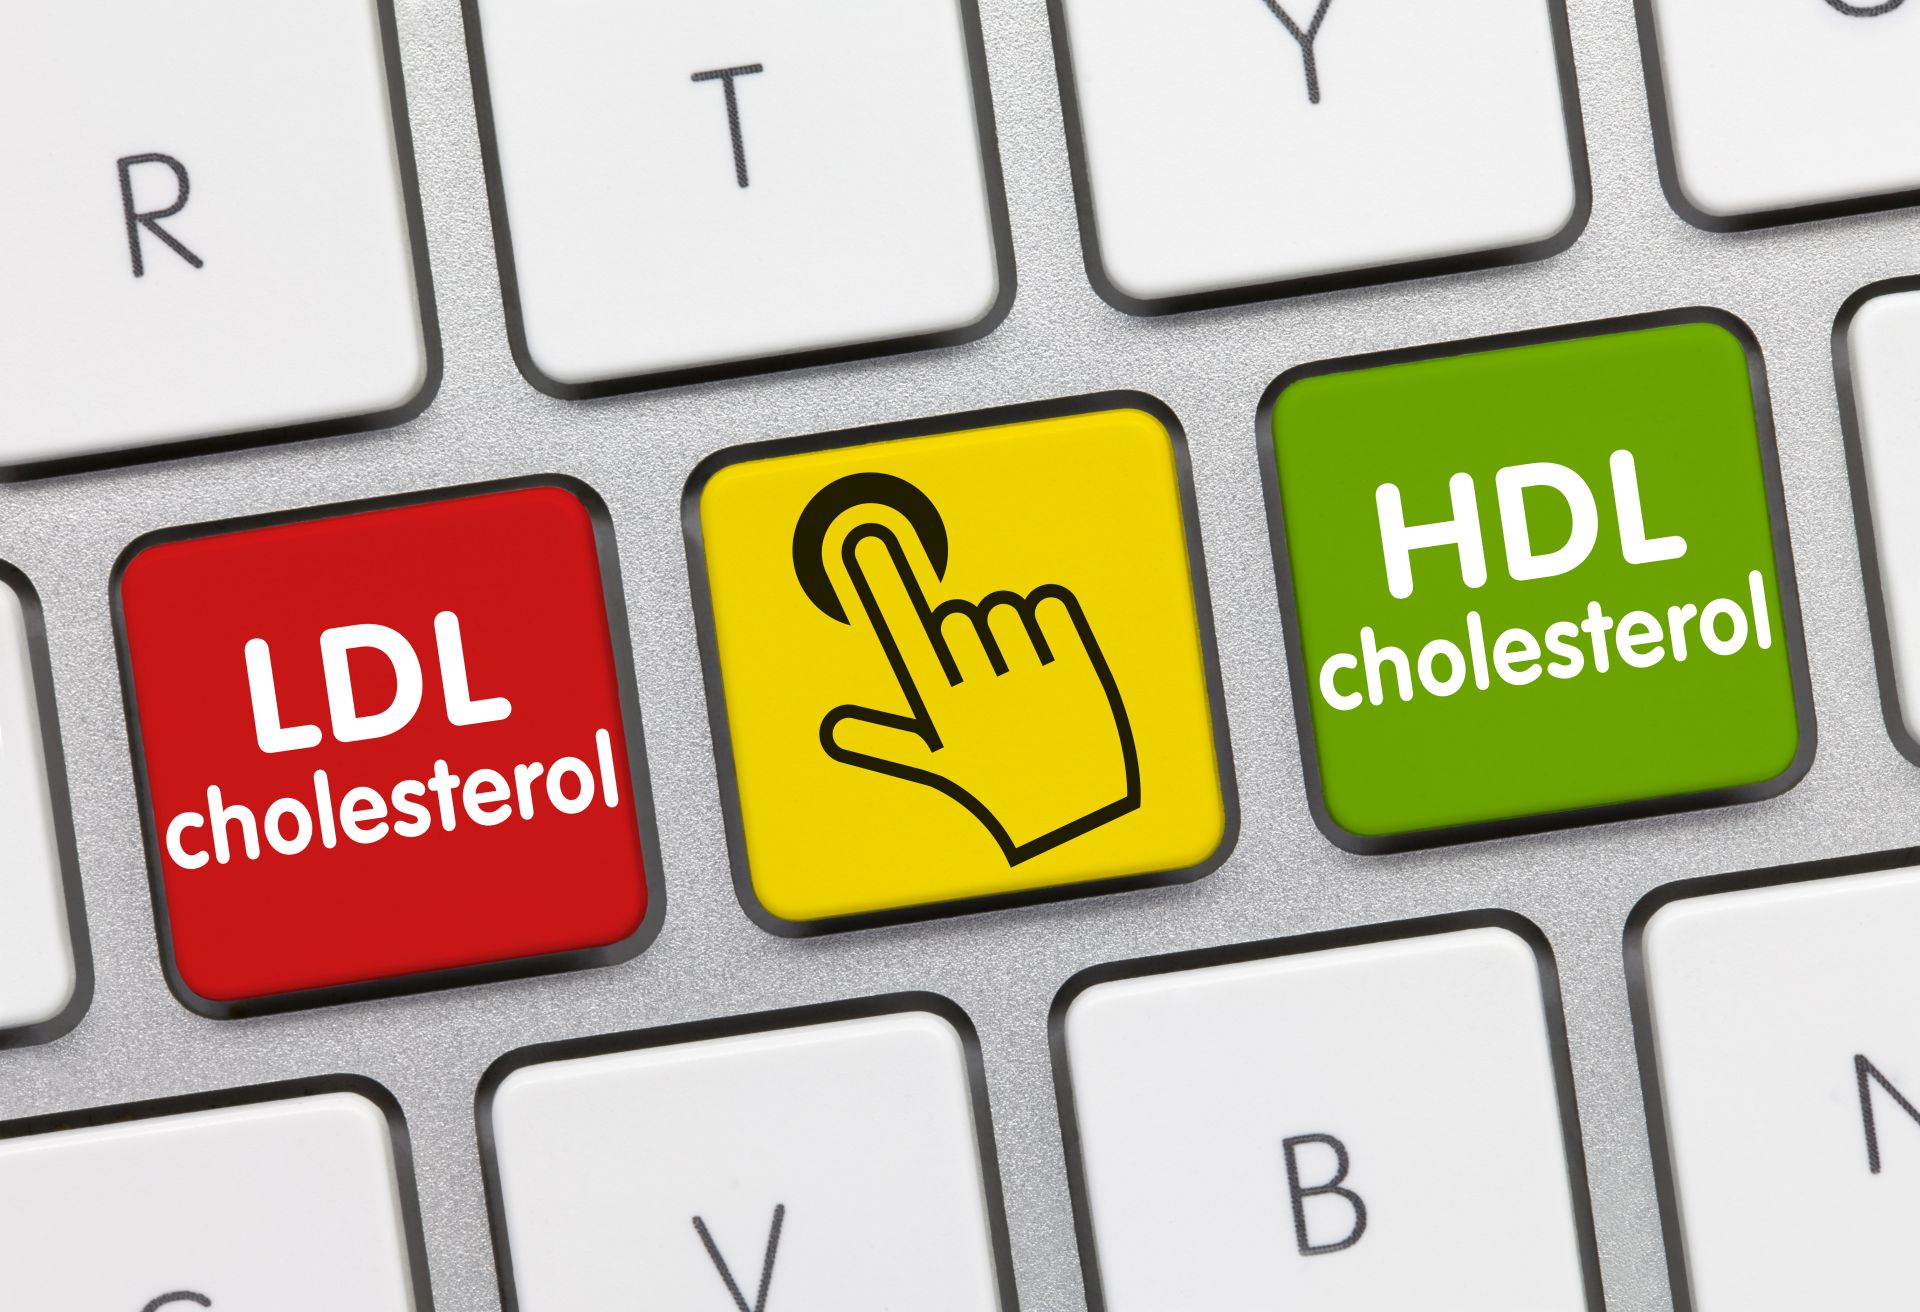 Podwyższony poziom cholesterolu zawsze oznacza chorobę? Cholesterol - normy wiekowe, mity i fakty, które ułatwią zapoznać się w temacie i niwelować ryzyko chorób serca.